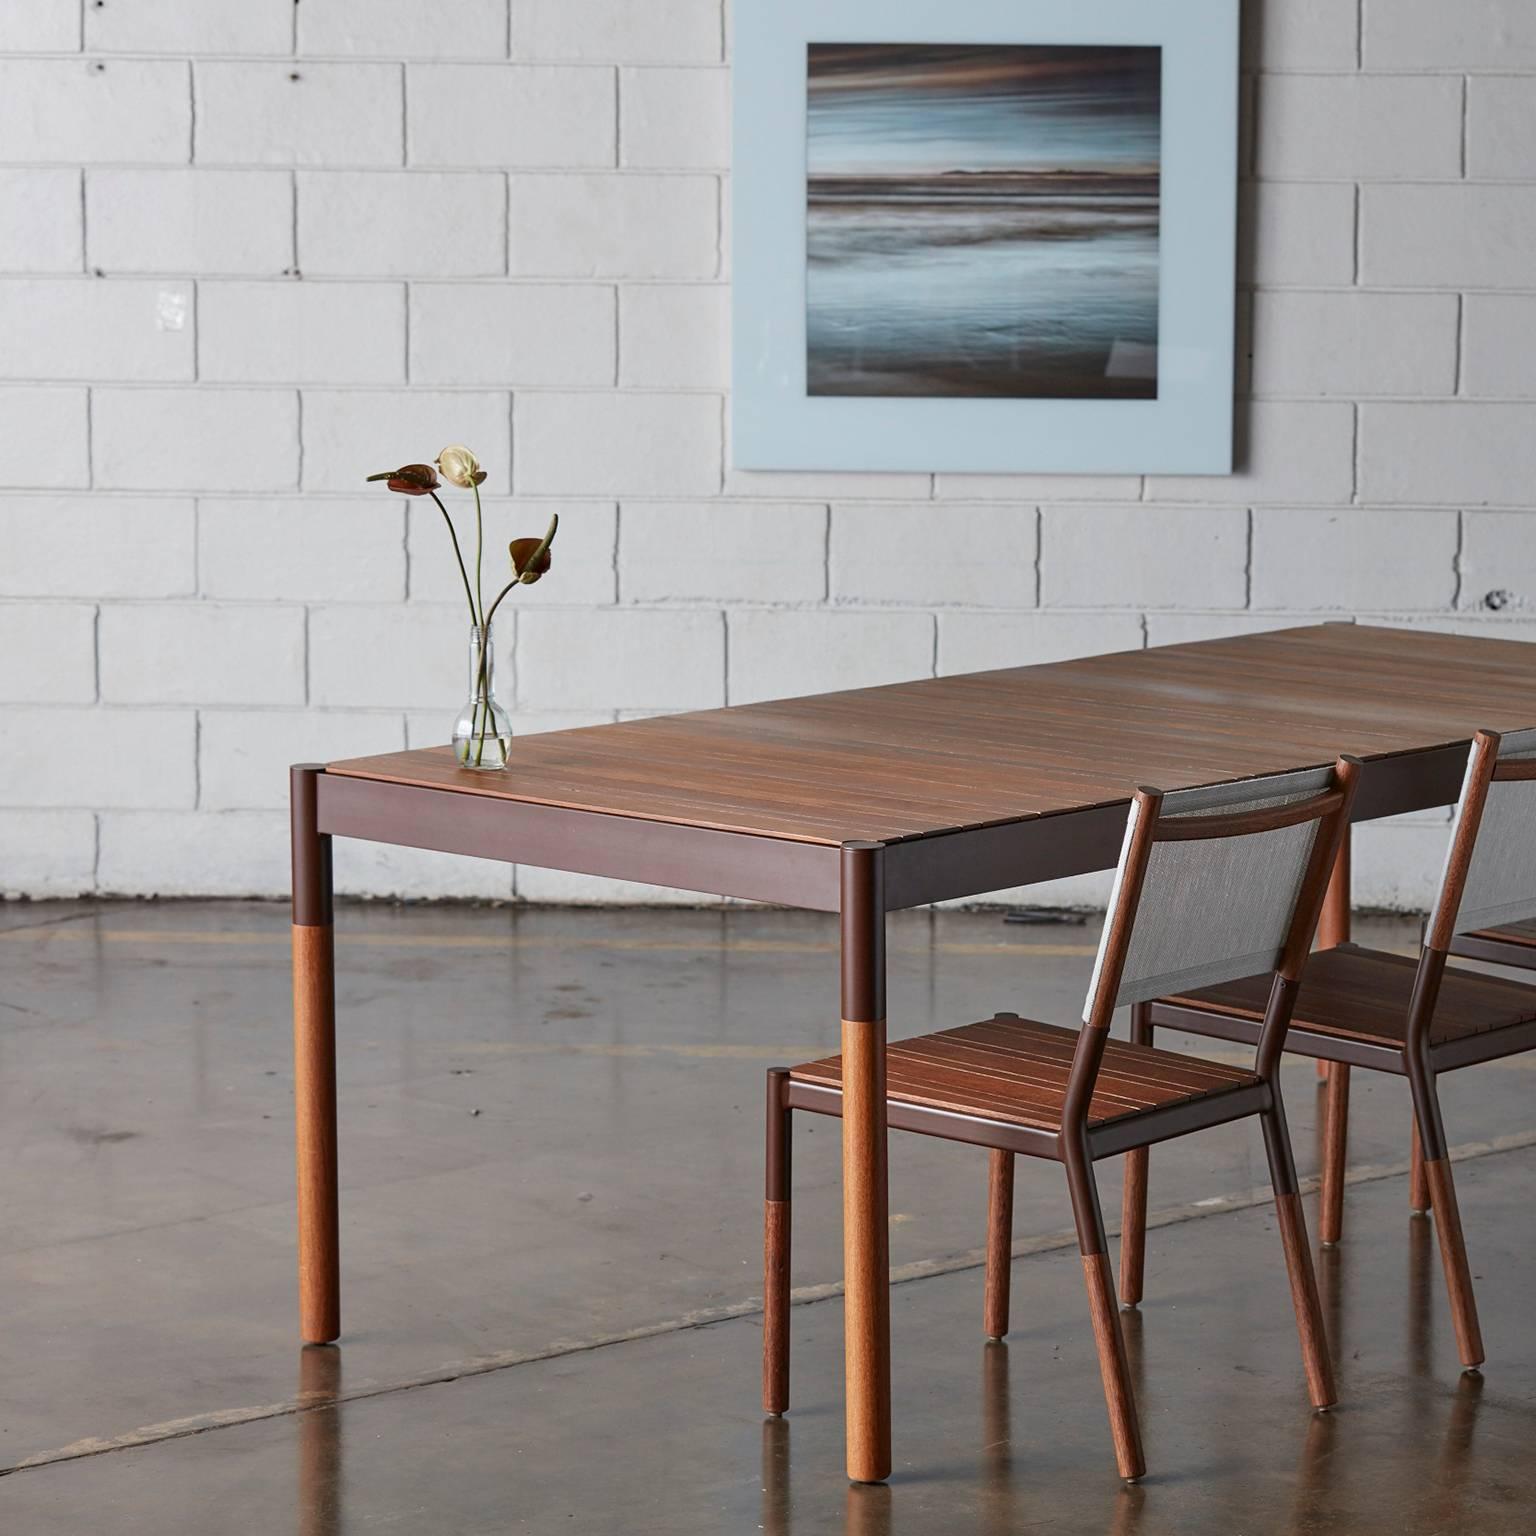 Cette table à manger d'extérieur est fabriquée en bois dur et en métal dans un design minimaliste. Il s'agit d'une table qui combine une fine épaisseur de bois massif avec un corps robuste, unissant l'aspect doux et moelleux du plateau avec